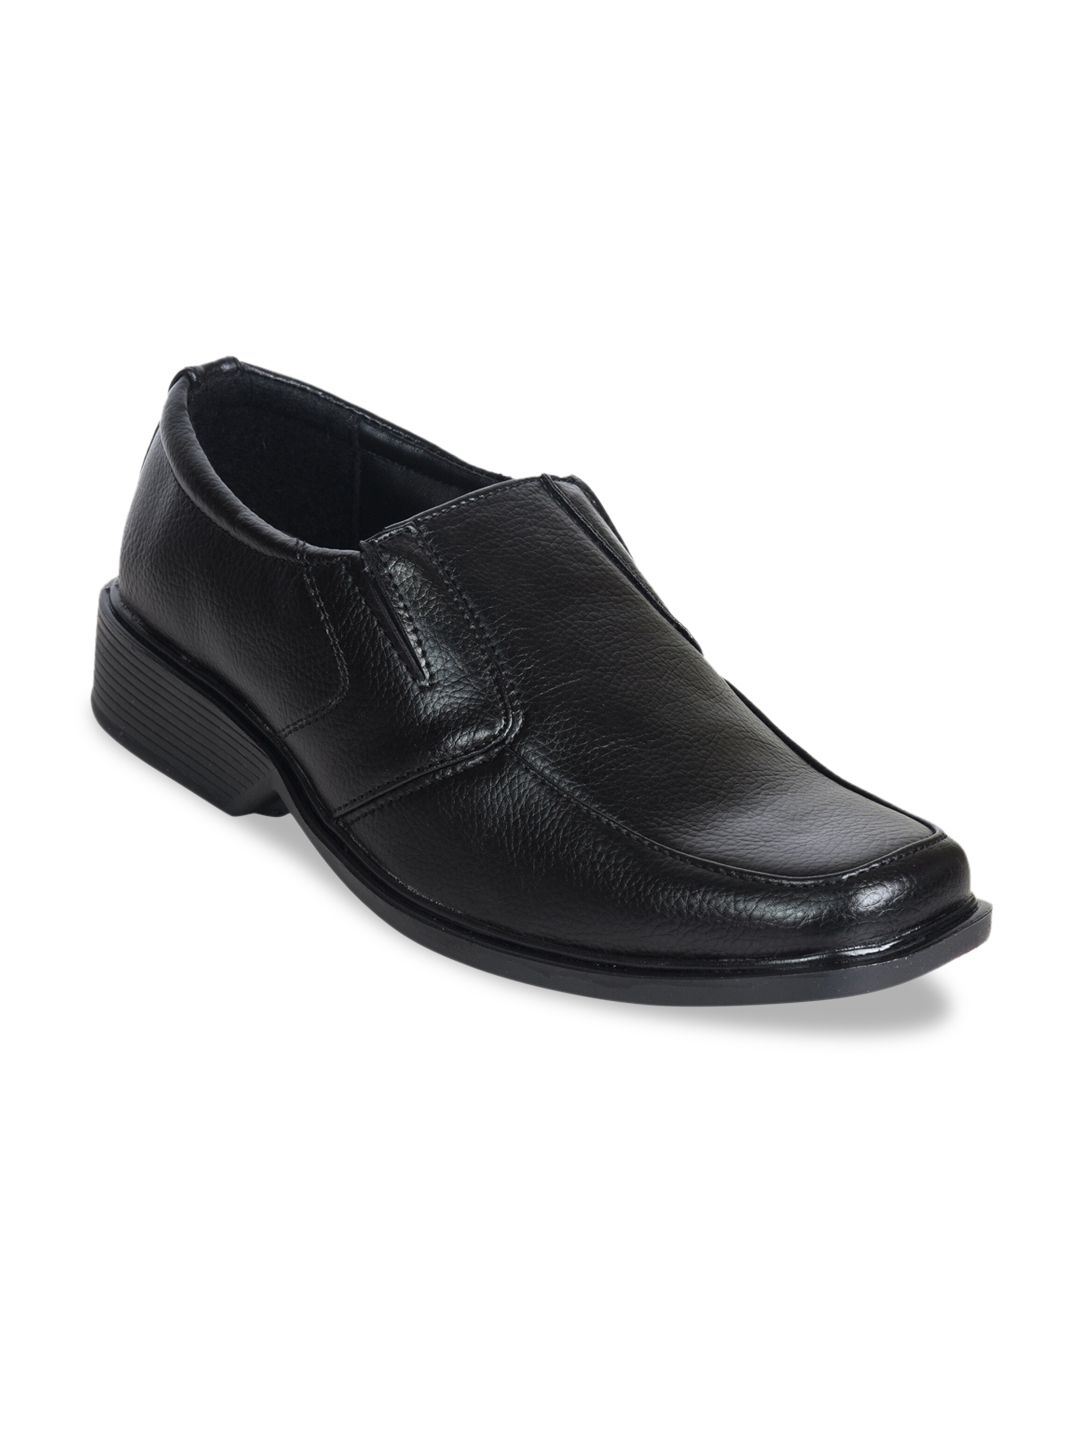 Buy Ajanta Men Black Solid Formal Slip On Shoes - Formal Shoes for Men ...